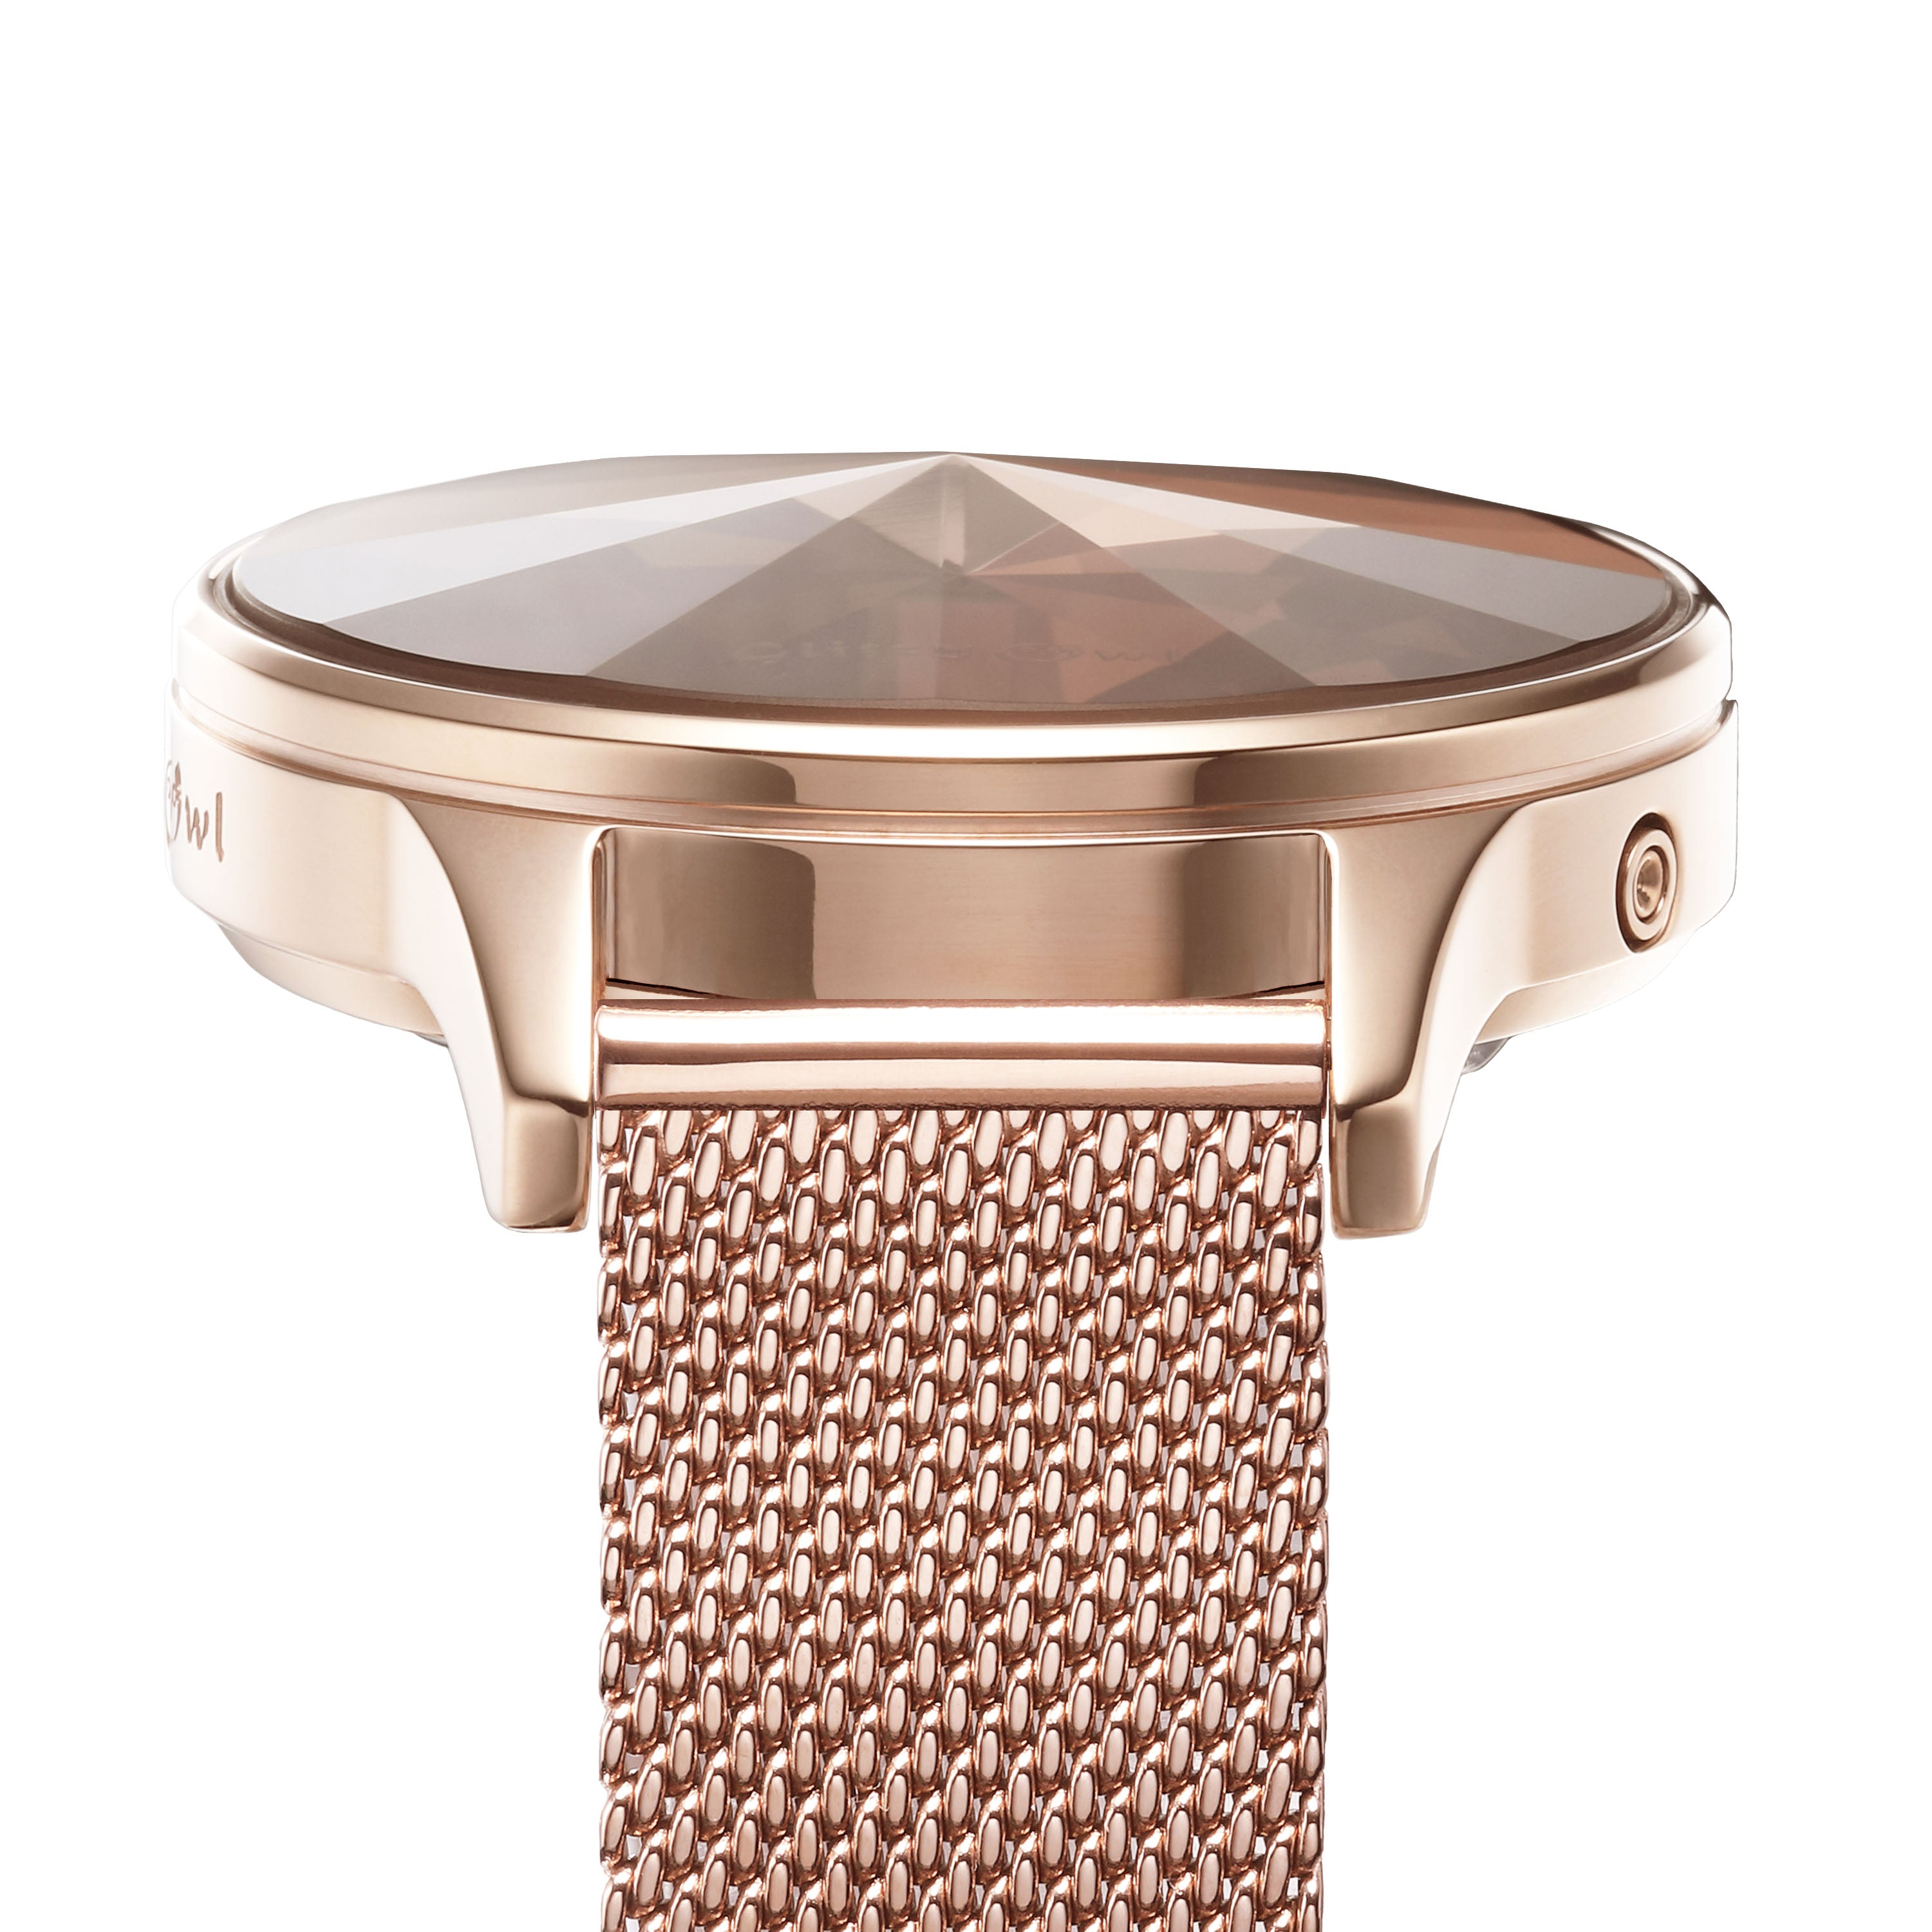 THE DIAMOND系列 - LED玫瑰金色不鏽鋼手錶